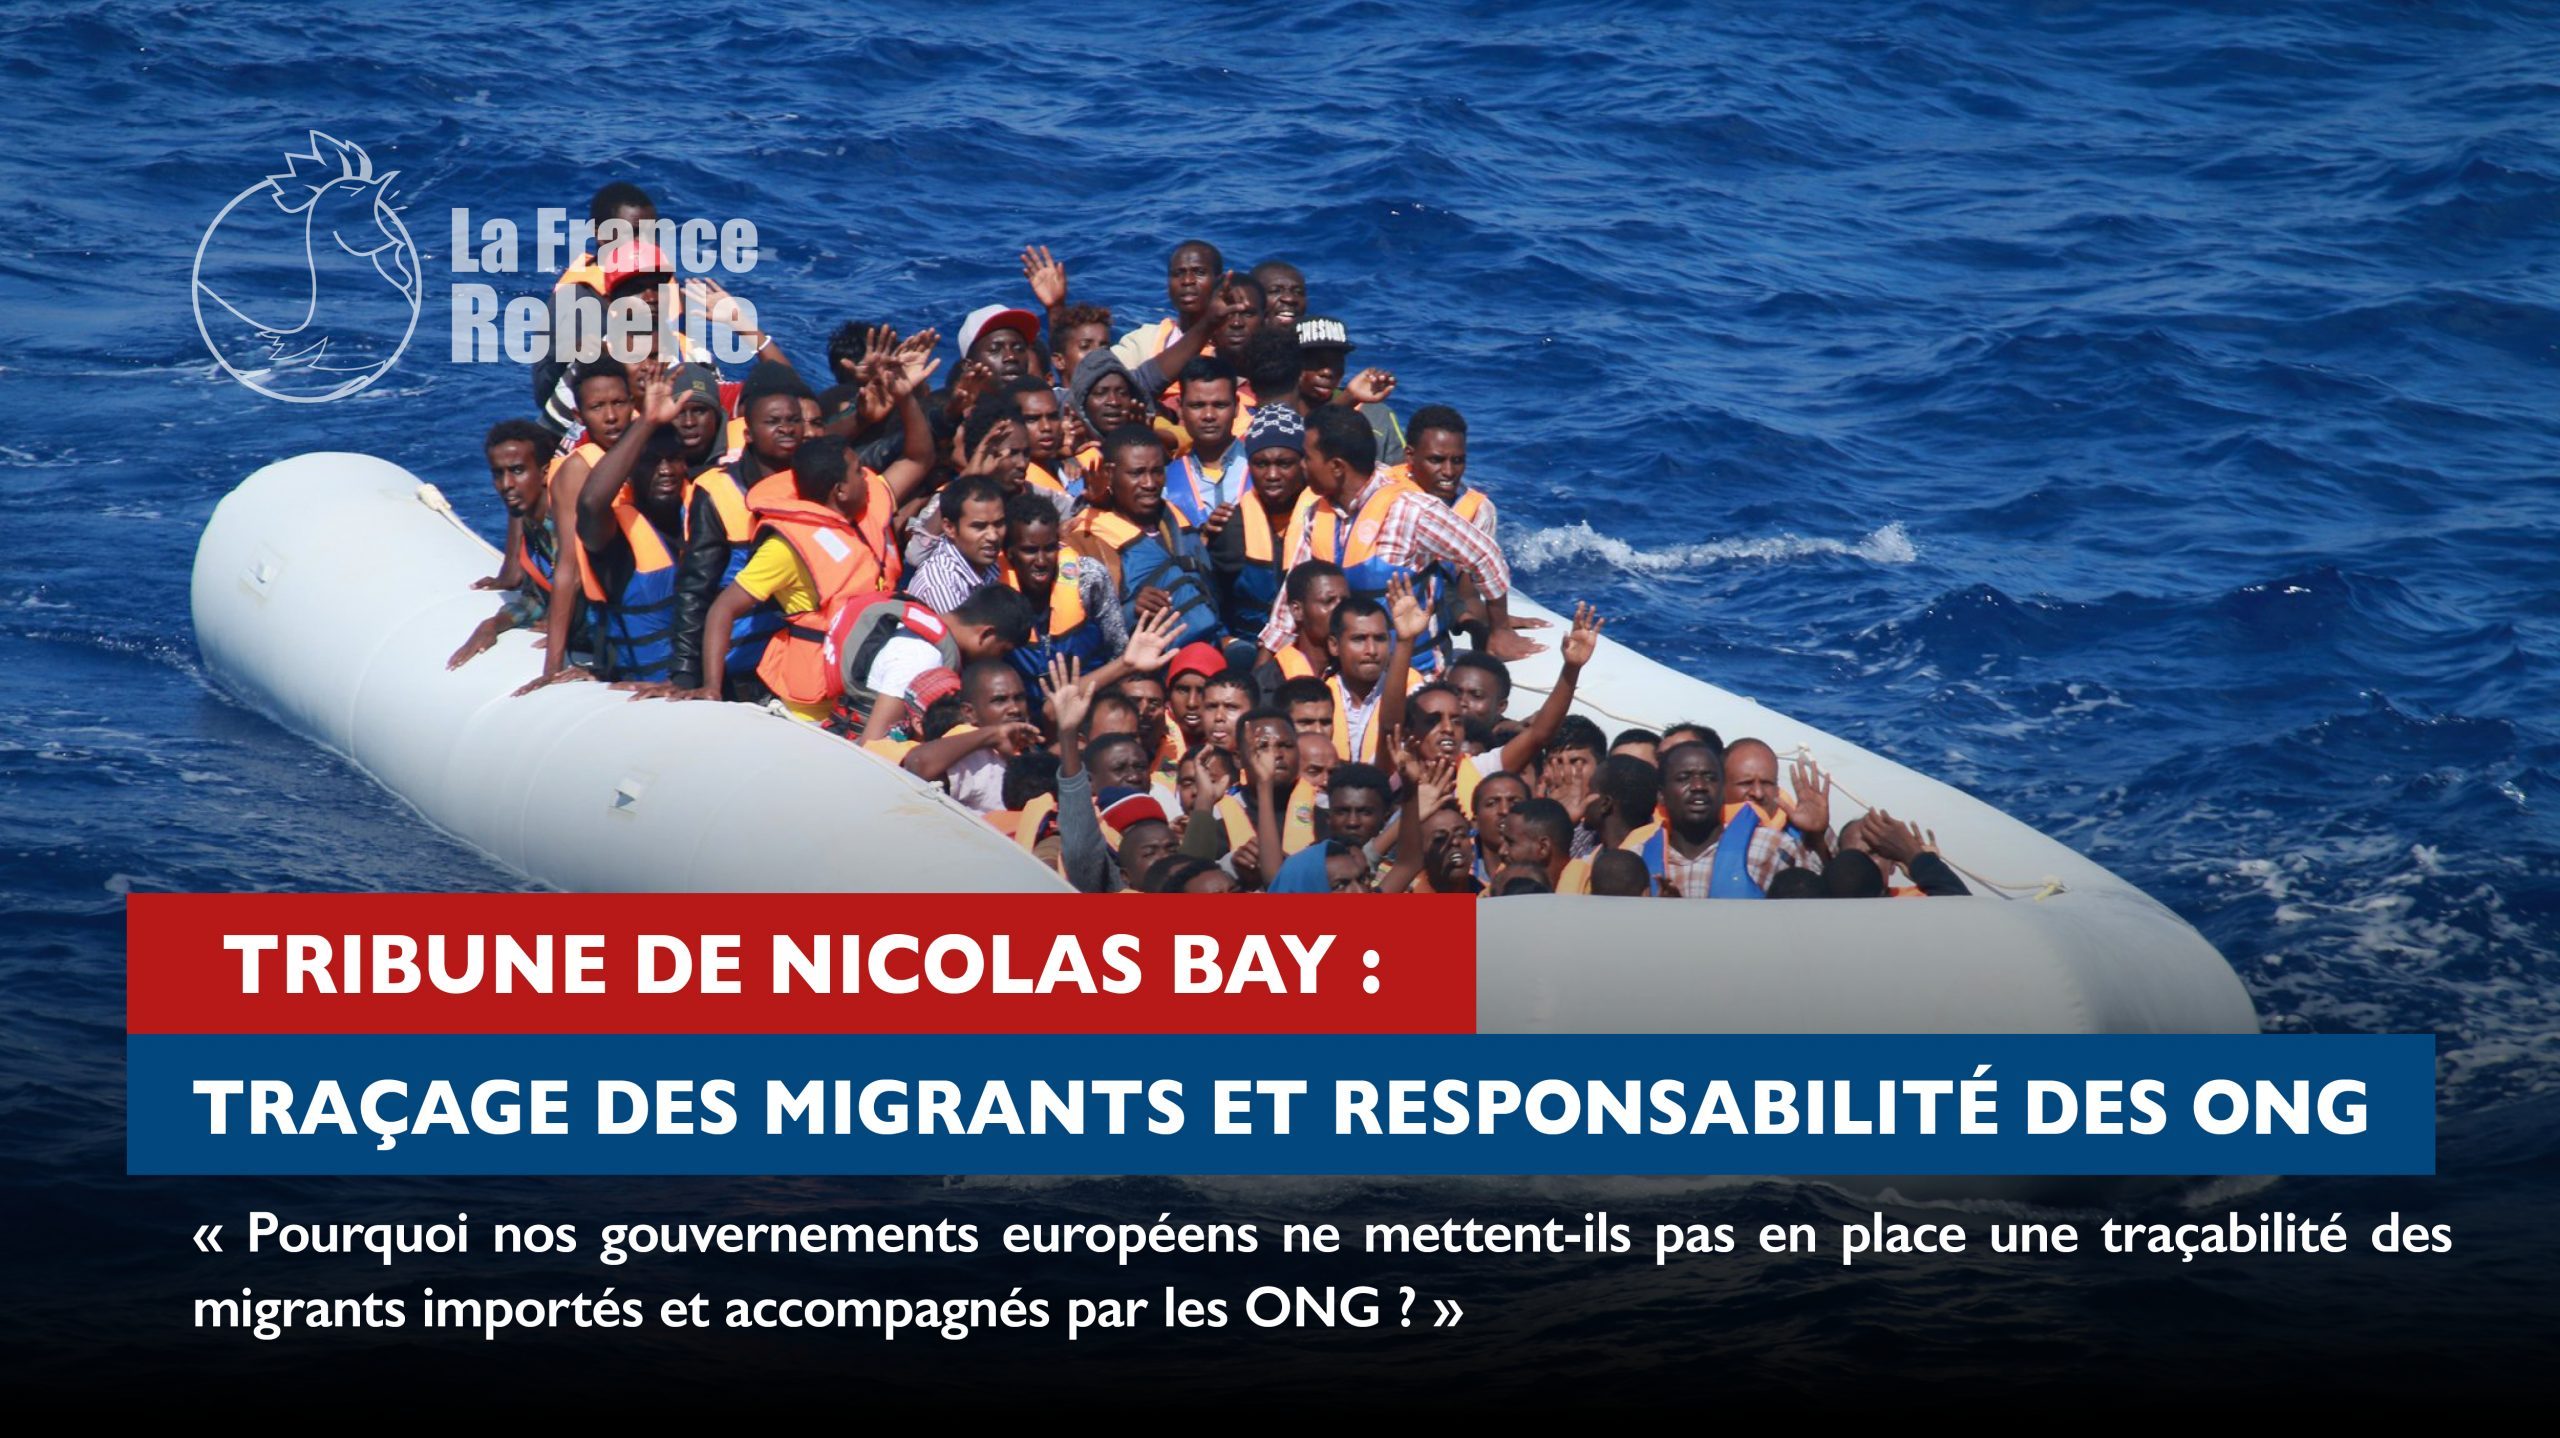 Migrants et ONG, ce qu’en pense Nicolas Bay